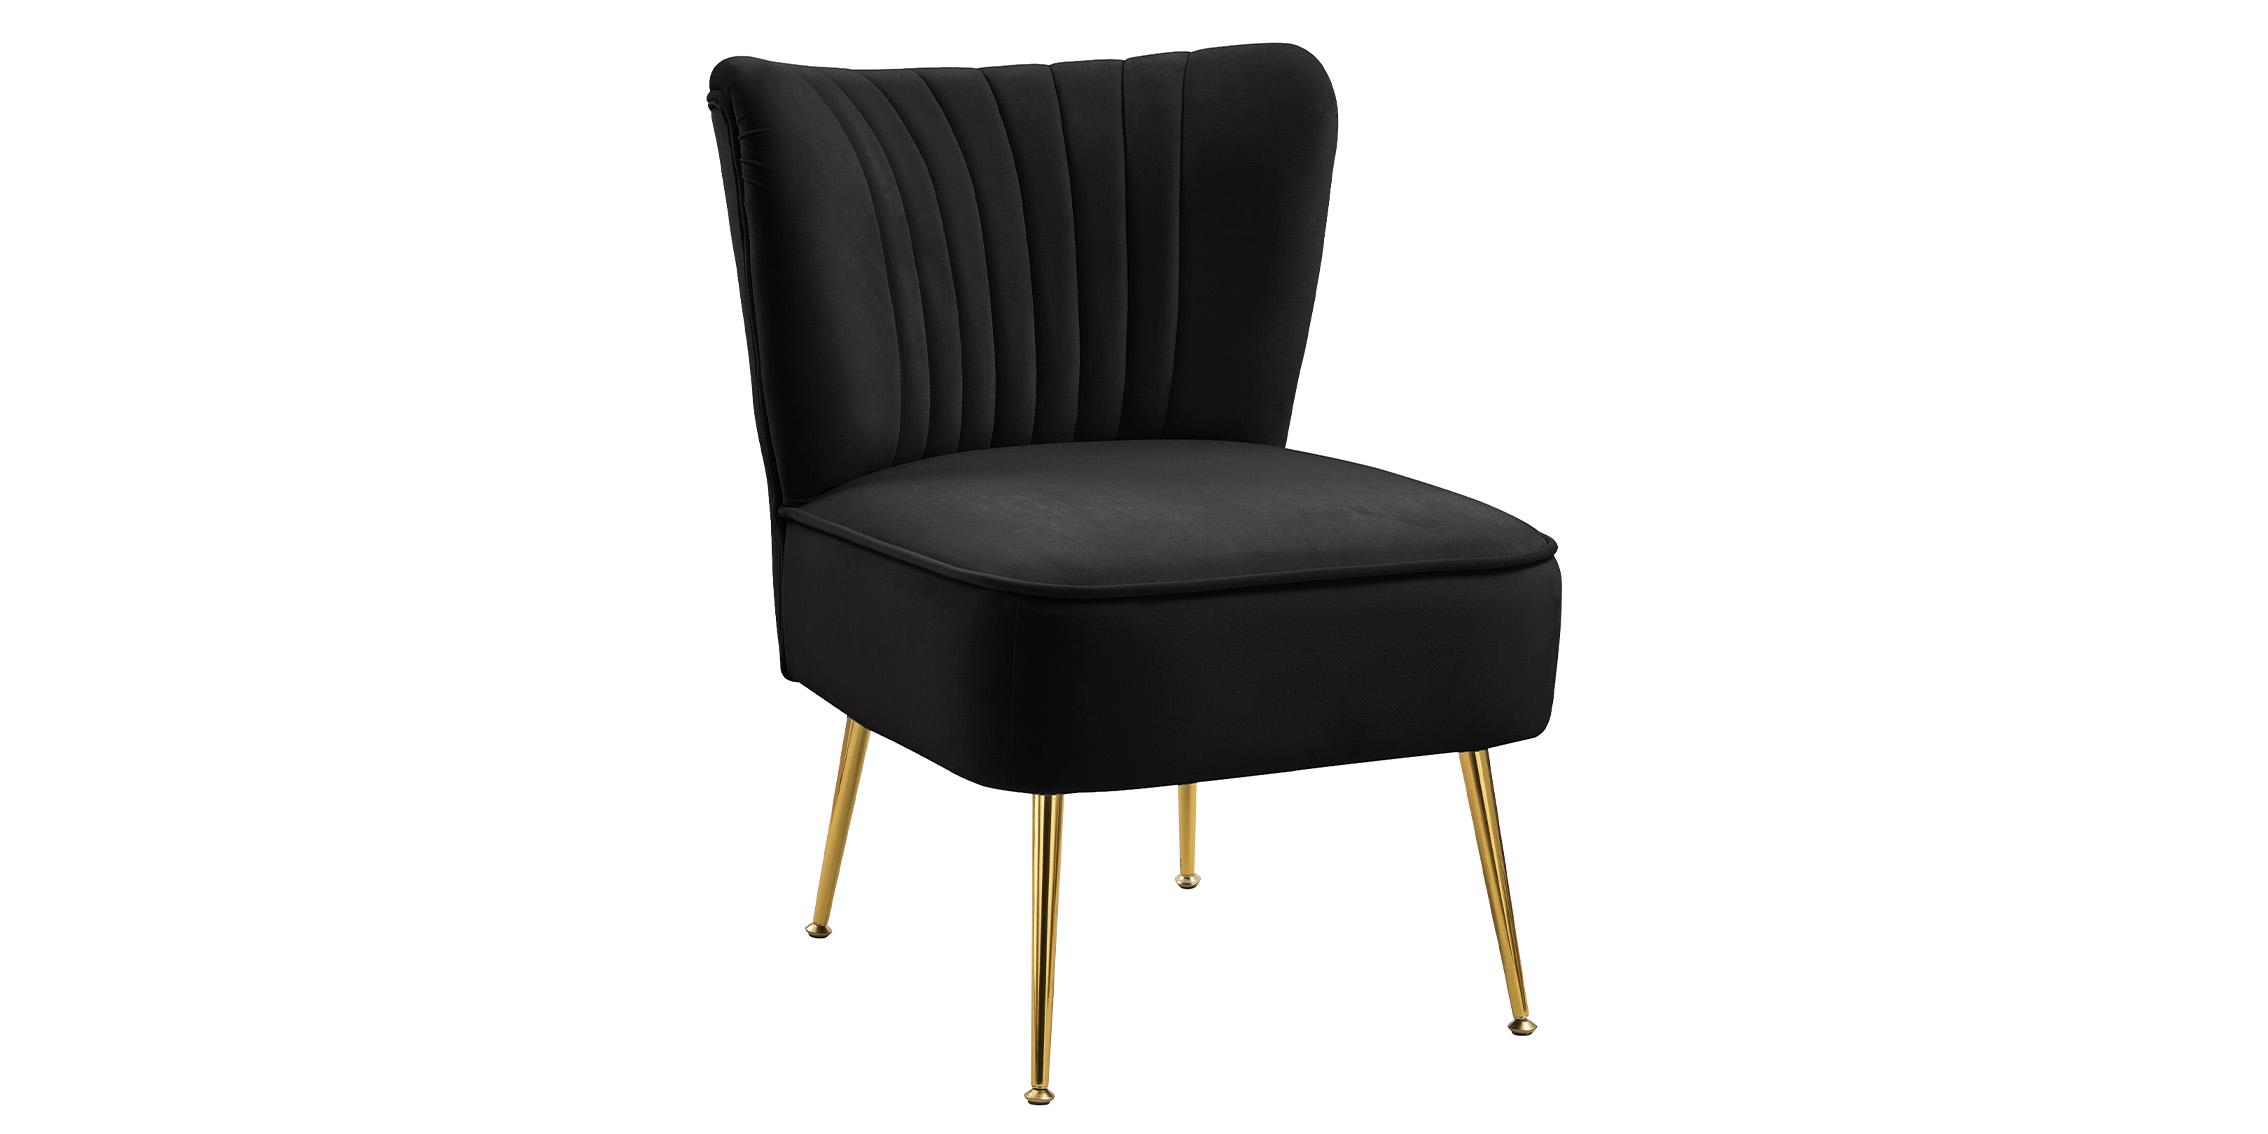 Contemporary, Modern Accent Chair TESS 504Black 504Black in Black Velvet